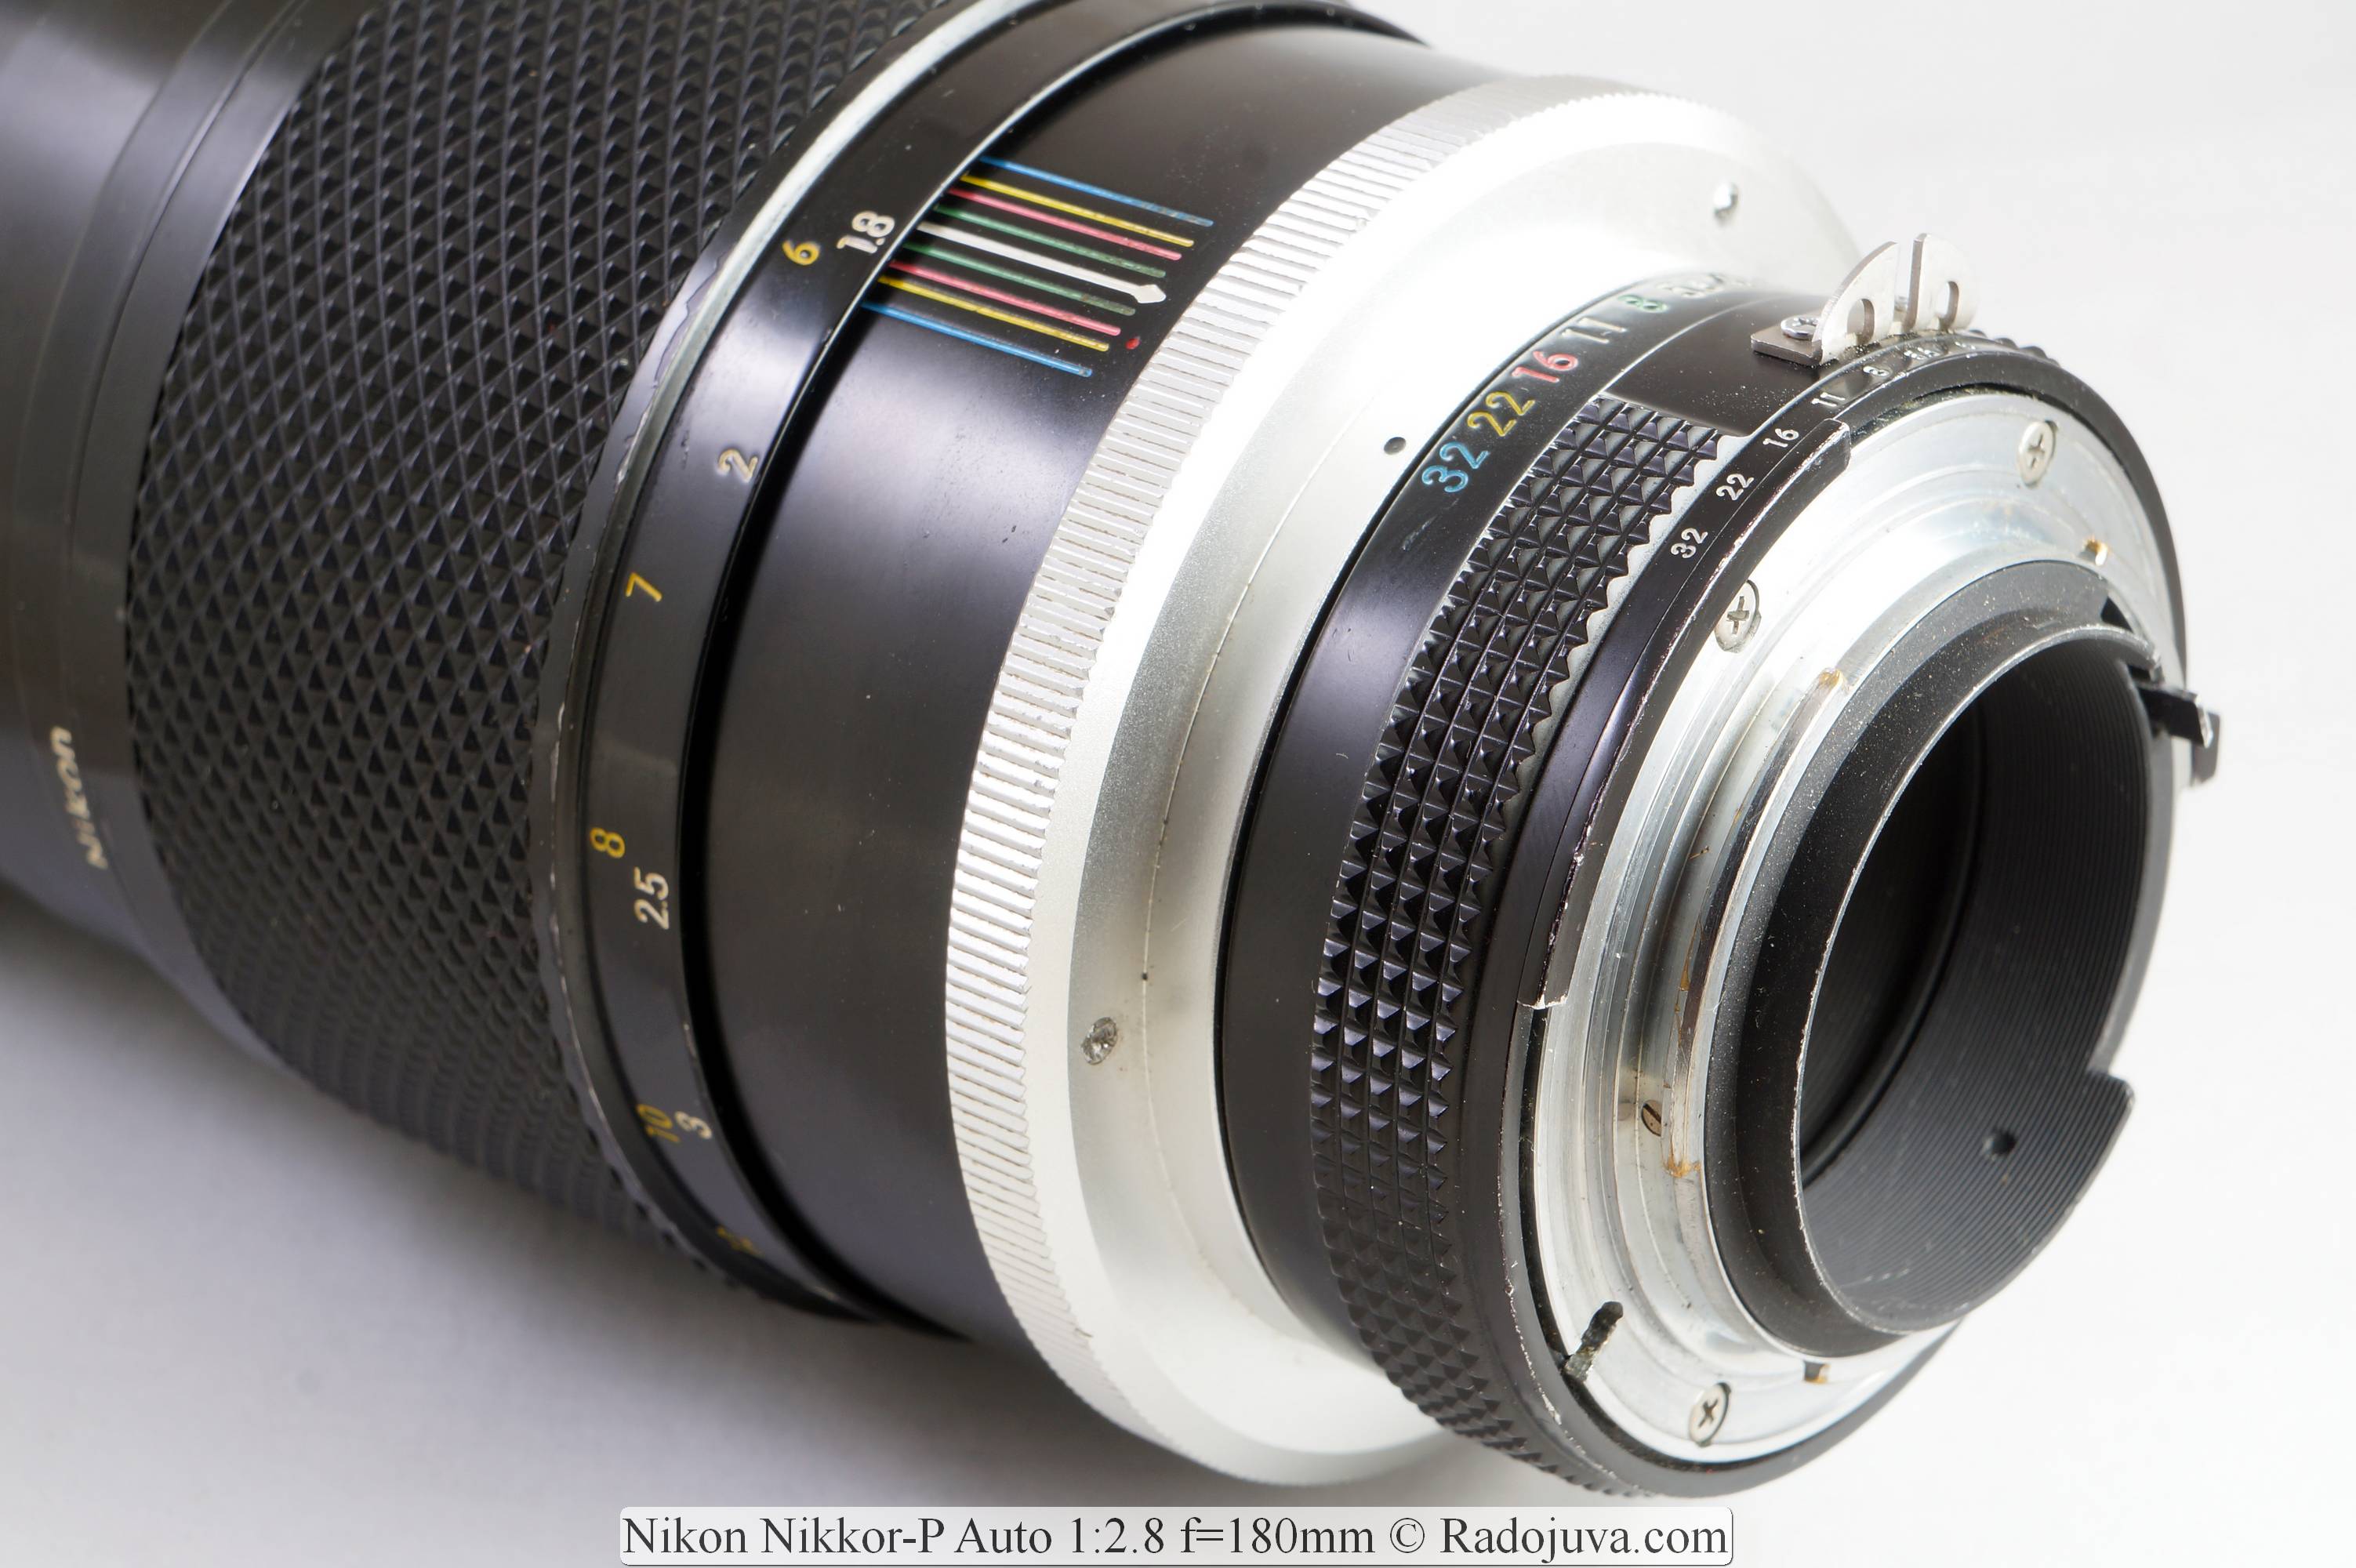 Nikon Nikkor-P Automático 1:2.8 f=180mm